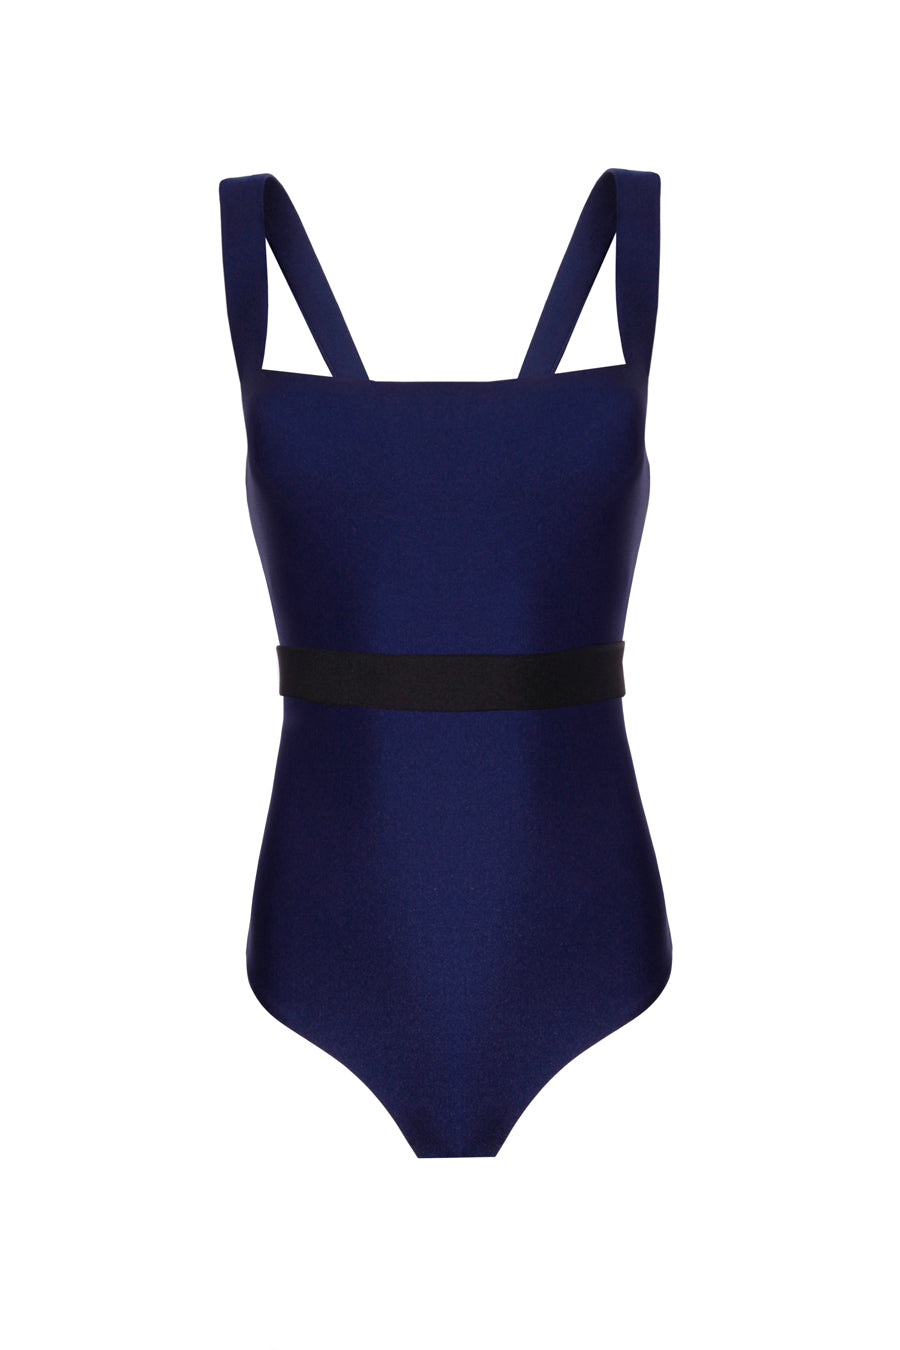 Valerie Navy Blue Swimsuit